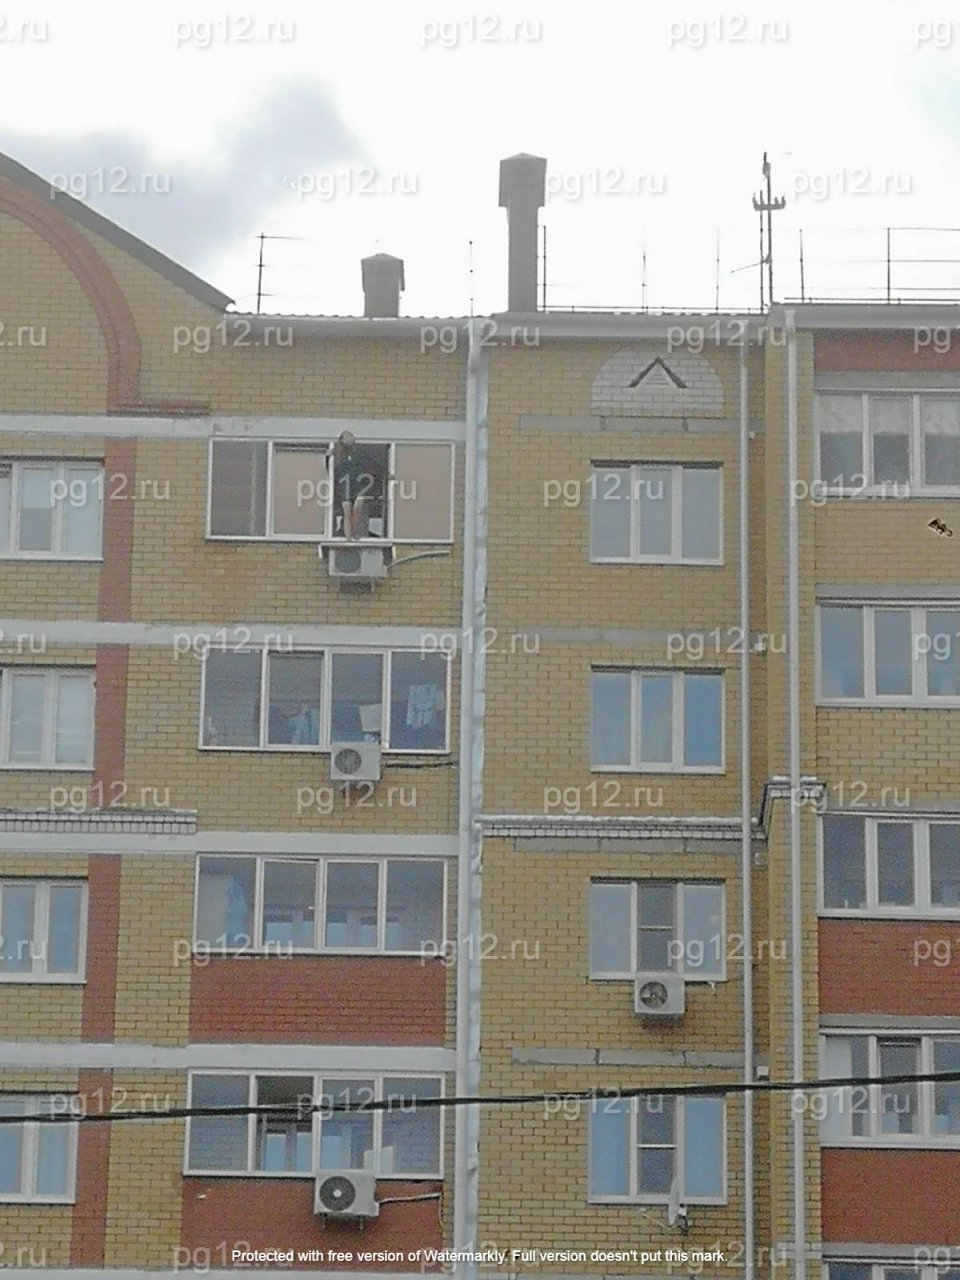 В Йошкар-Оле женщина пыталась выпрыгнуть с балкона многоэтажки